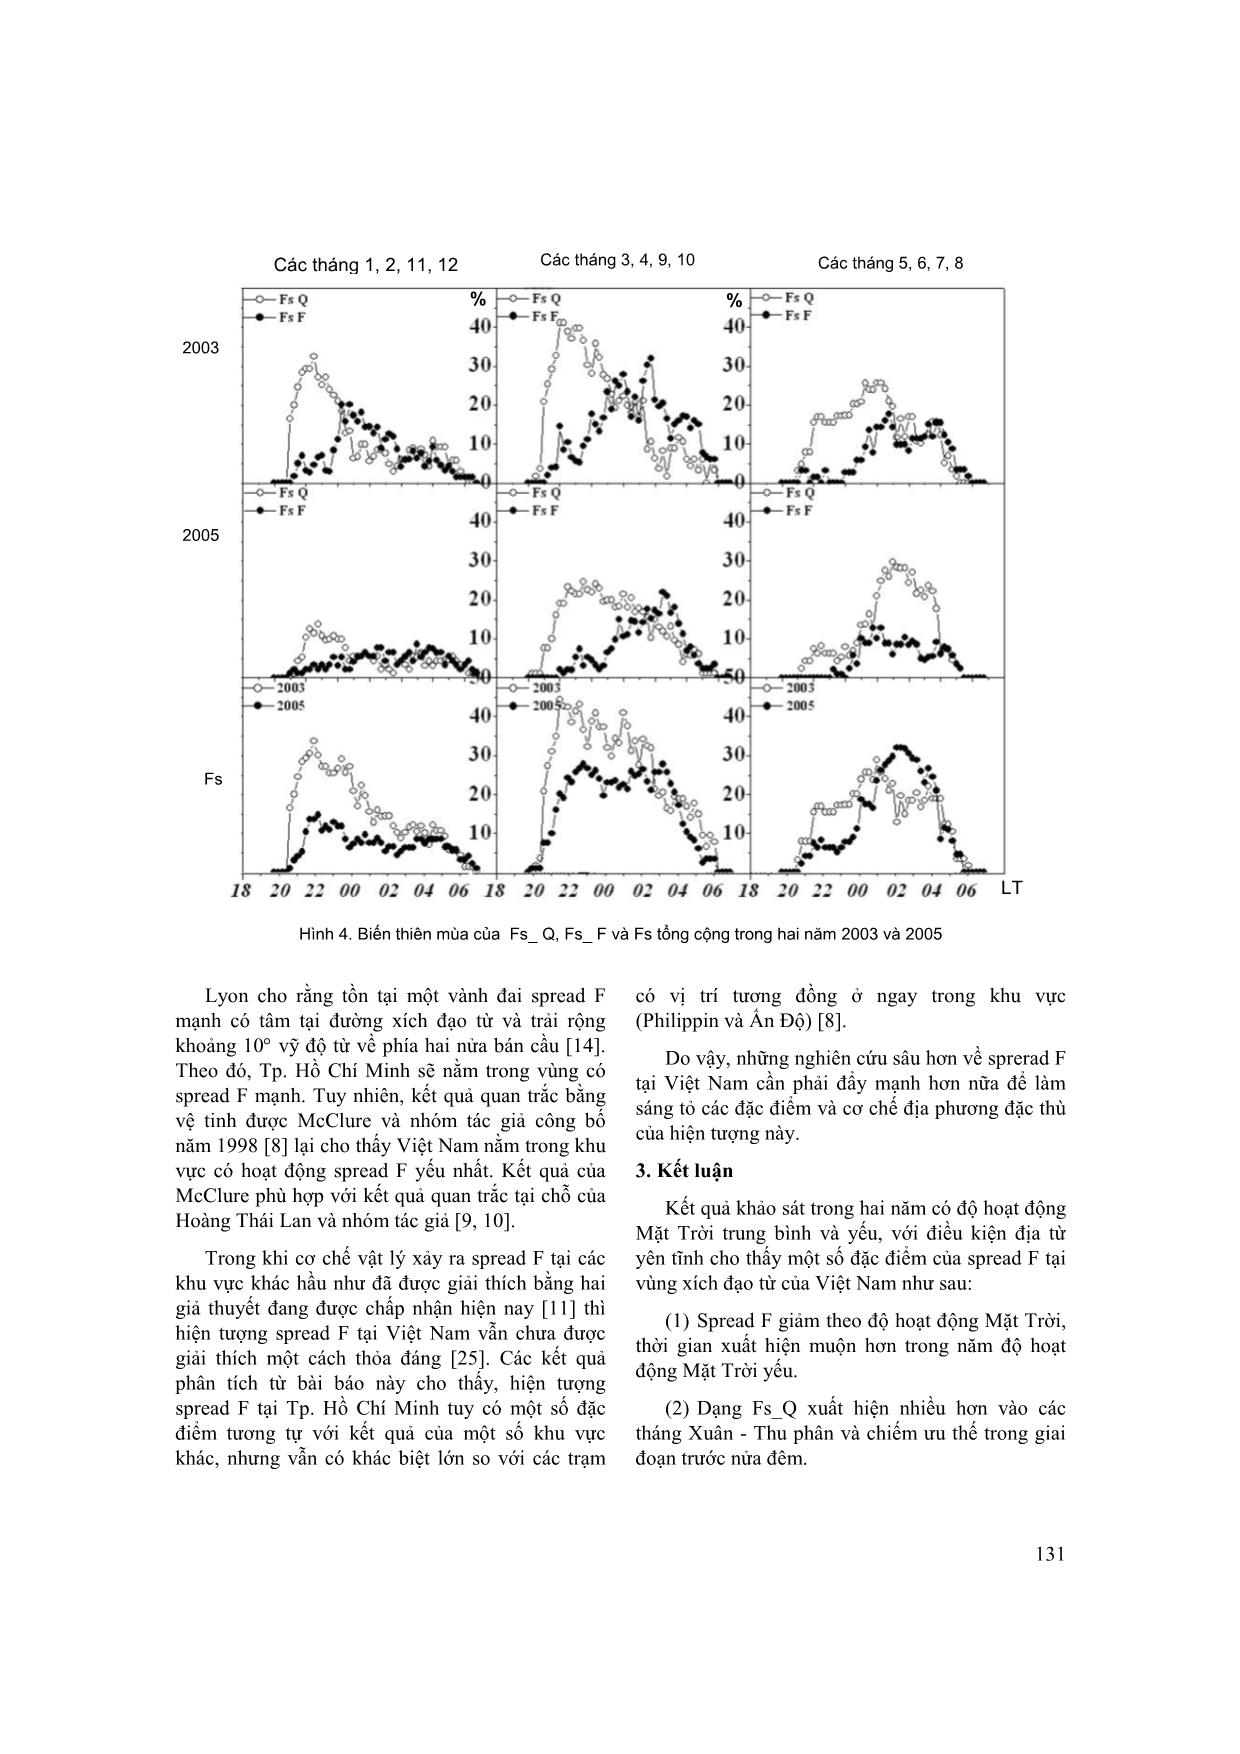 So sánh sự xuất hiện của Spread F xích đạo từ trong năm mặt trời hoạt động trung bình (2003) và hoạt động yếu (2005) trang 6